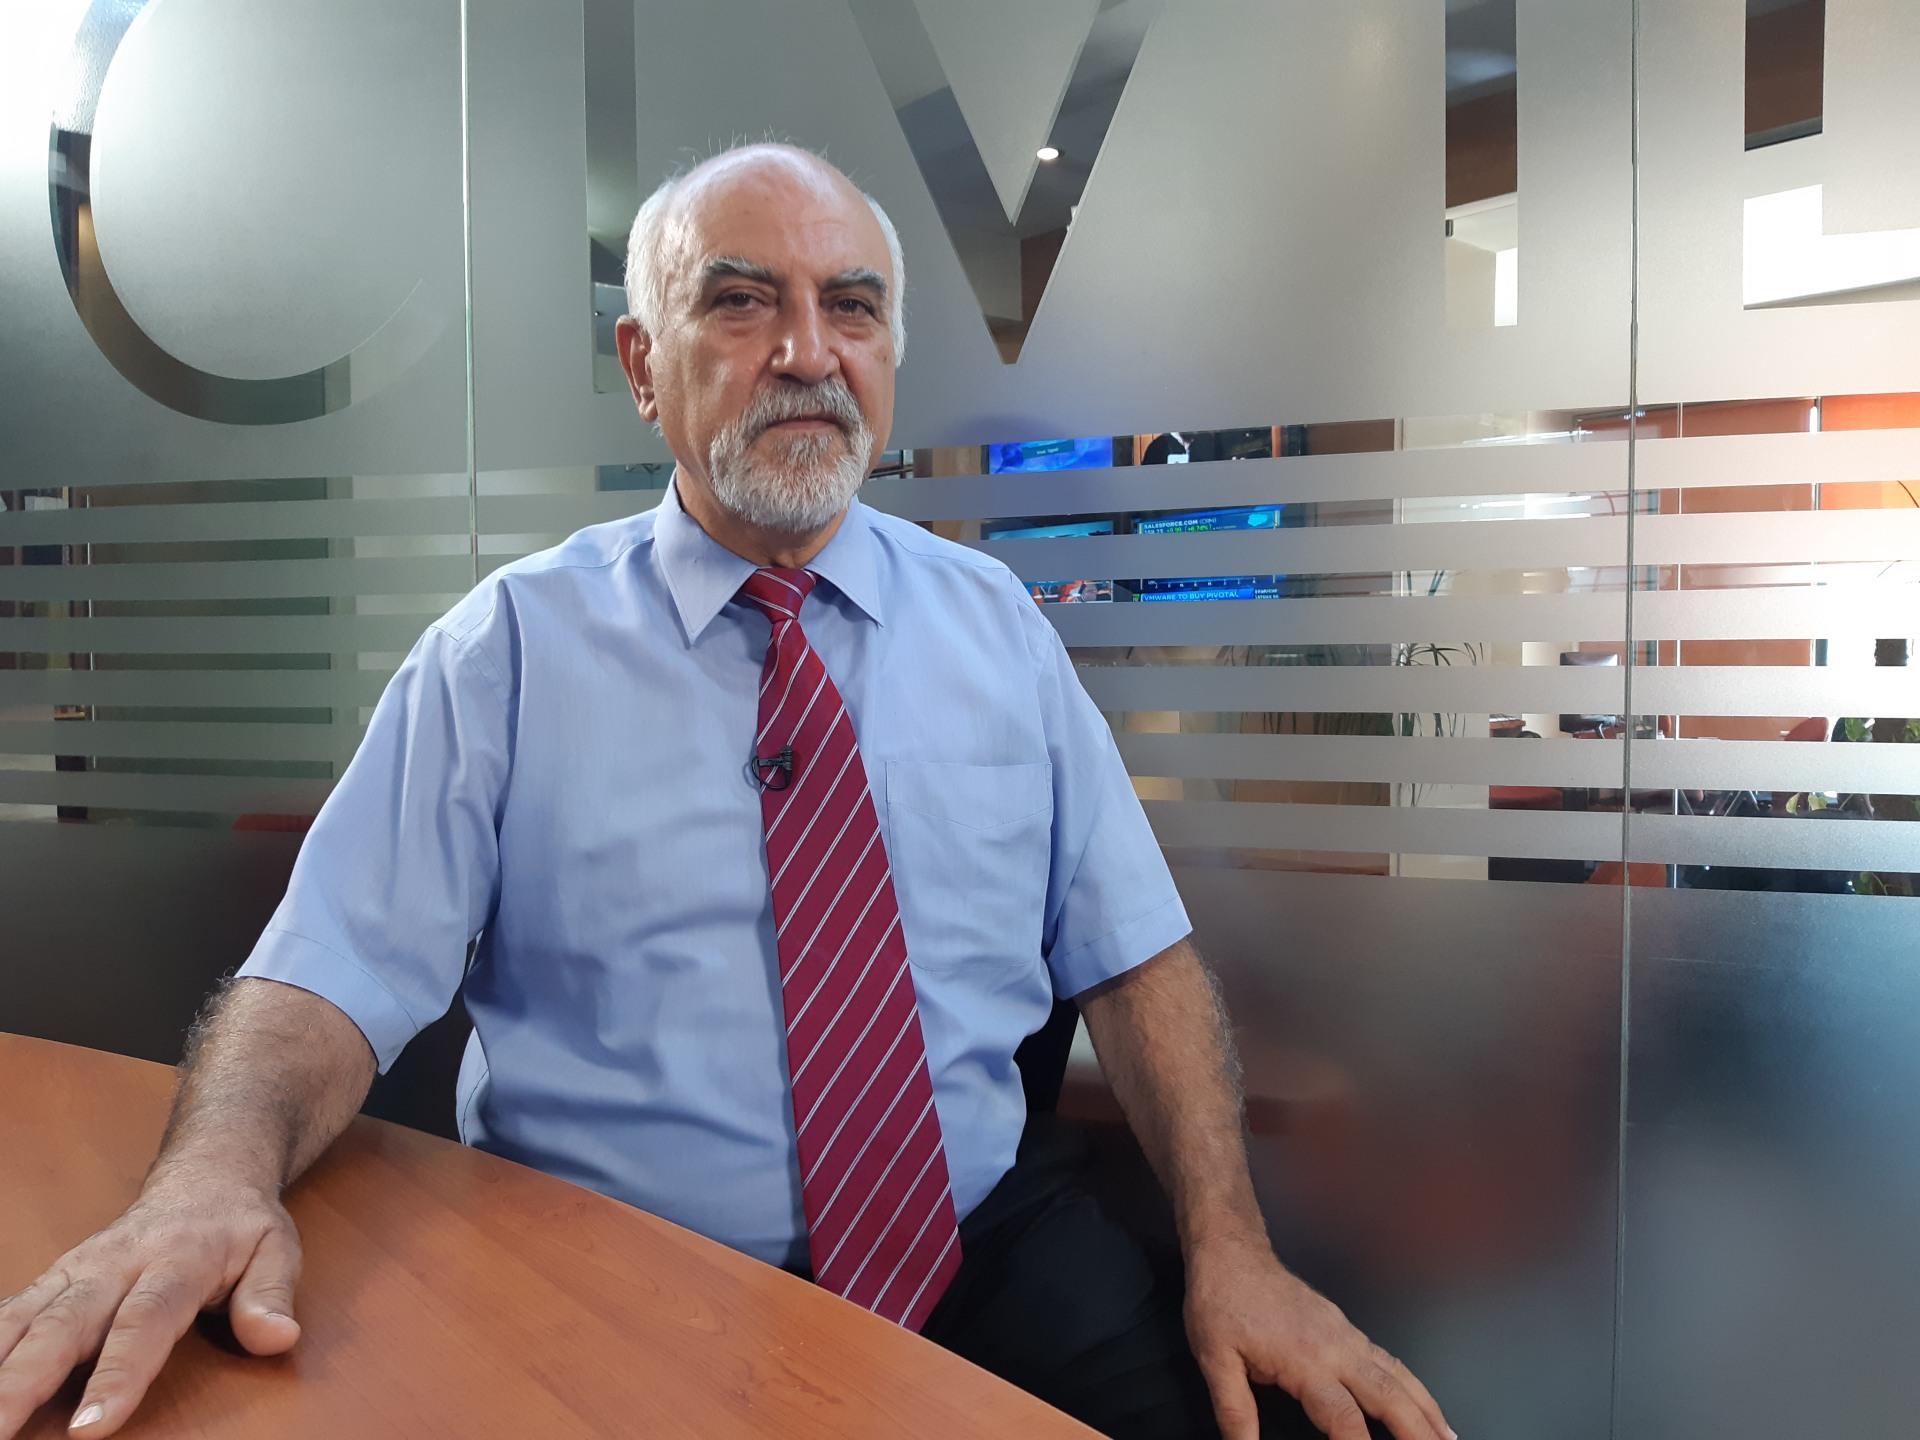 Հայաստանի անկախության ճանապարհը․ զրույց Պարույր Հայրիկյանի հետ